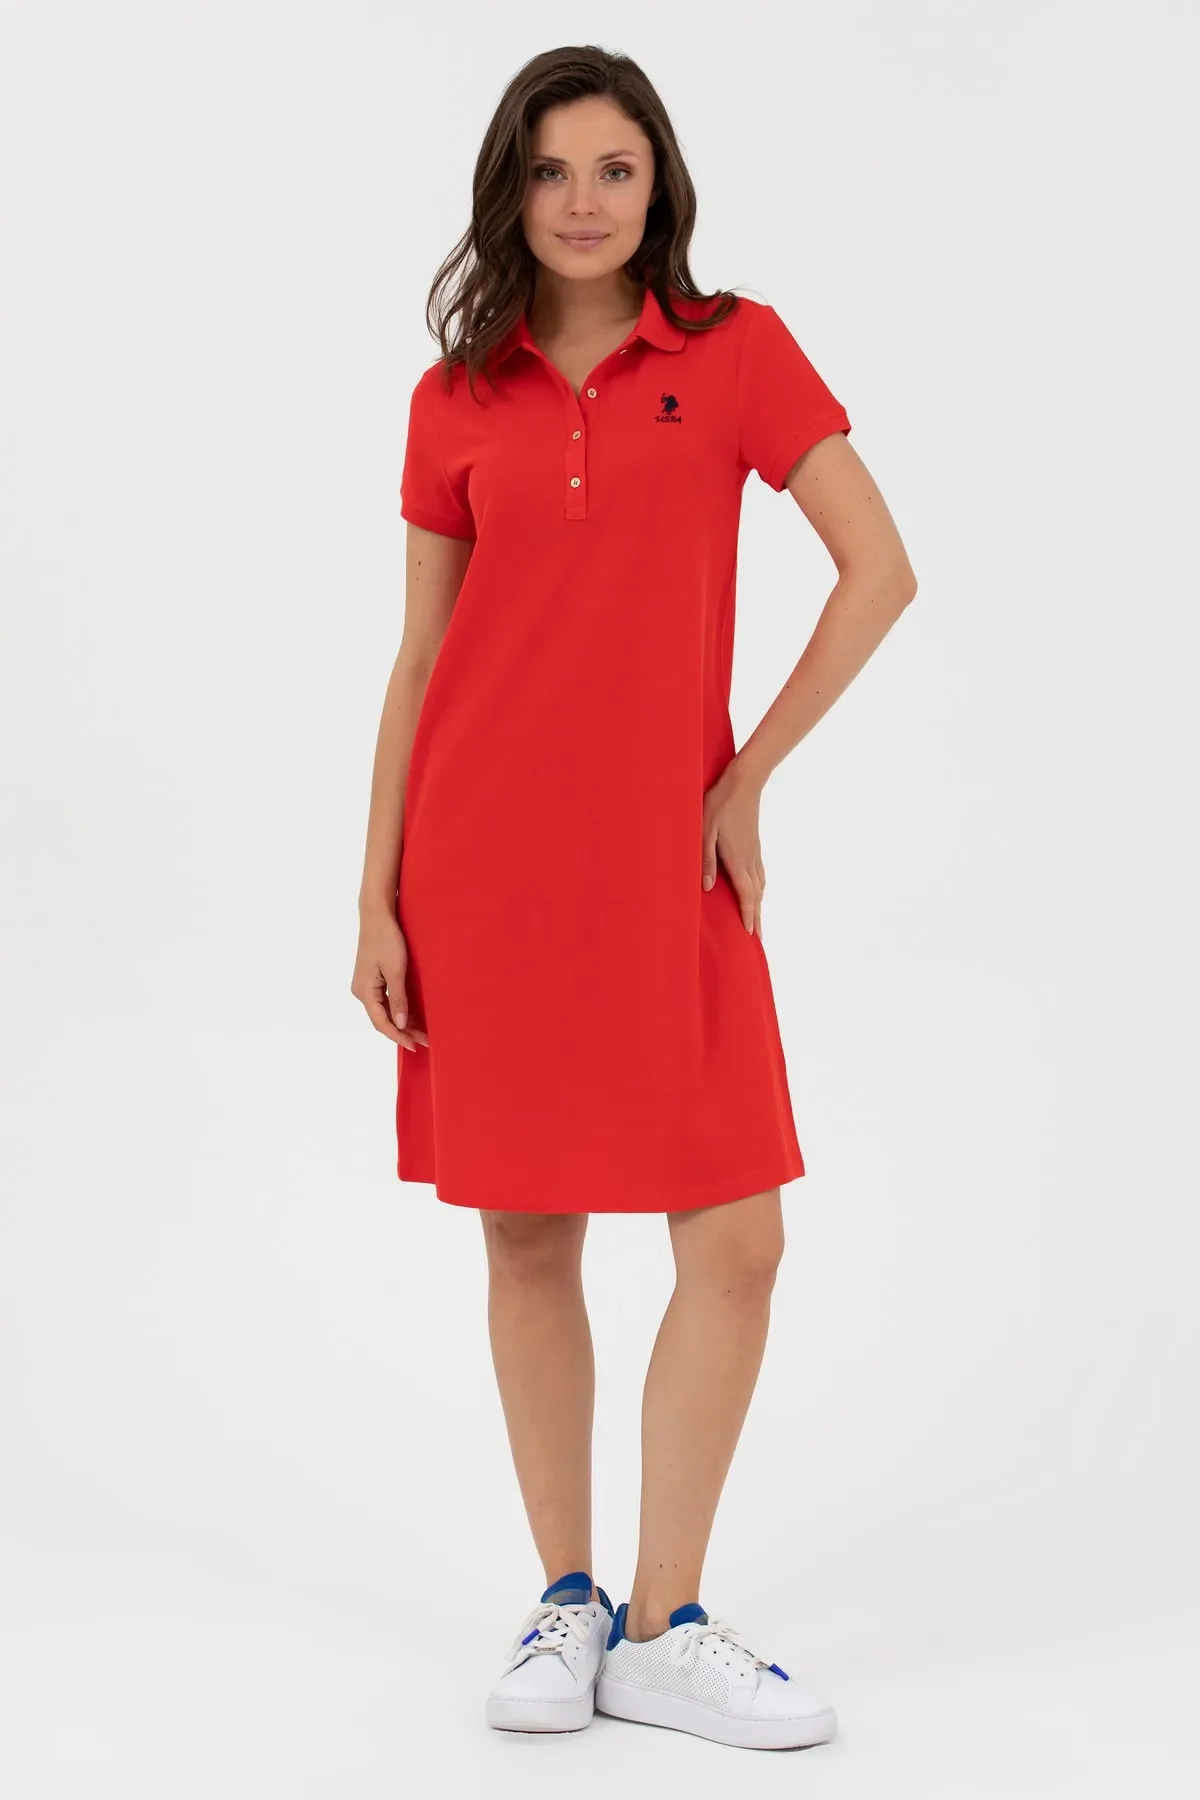 Kadın Polo Yaka Örme Elbise-Kırmızı - 1